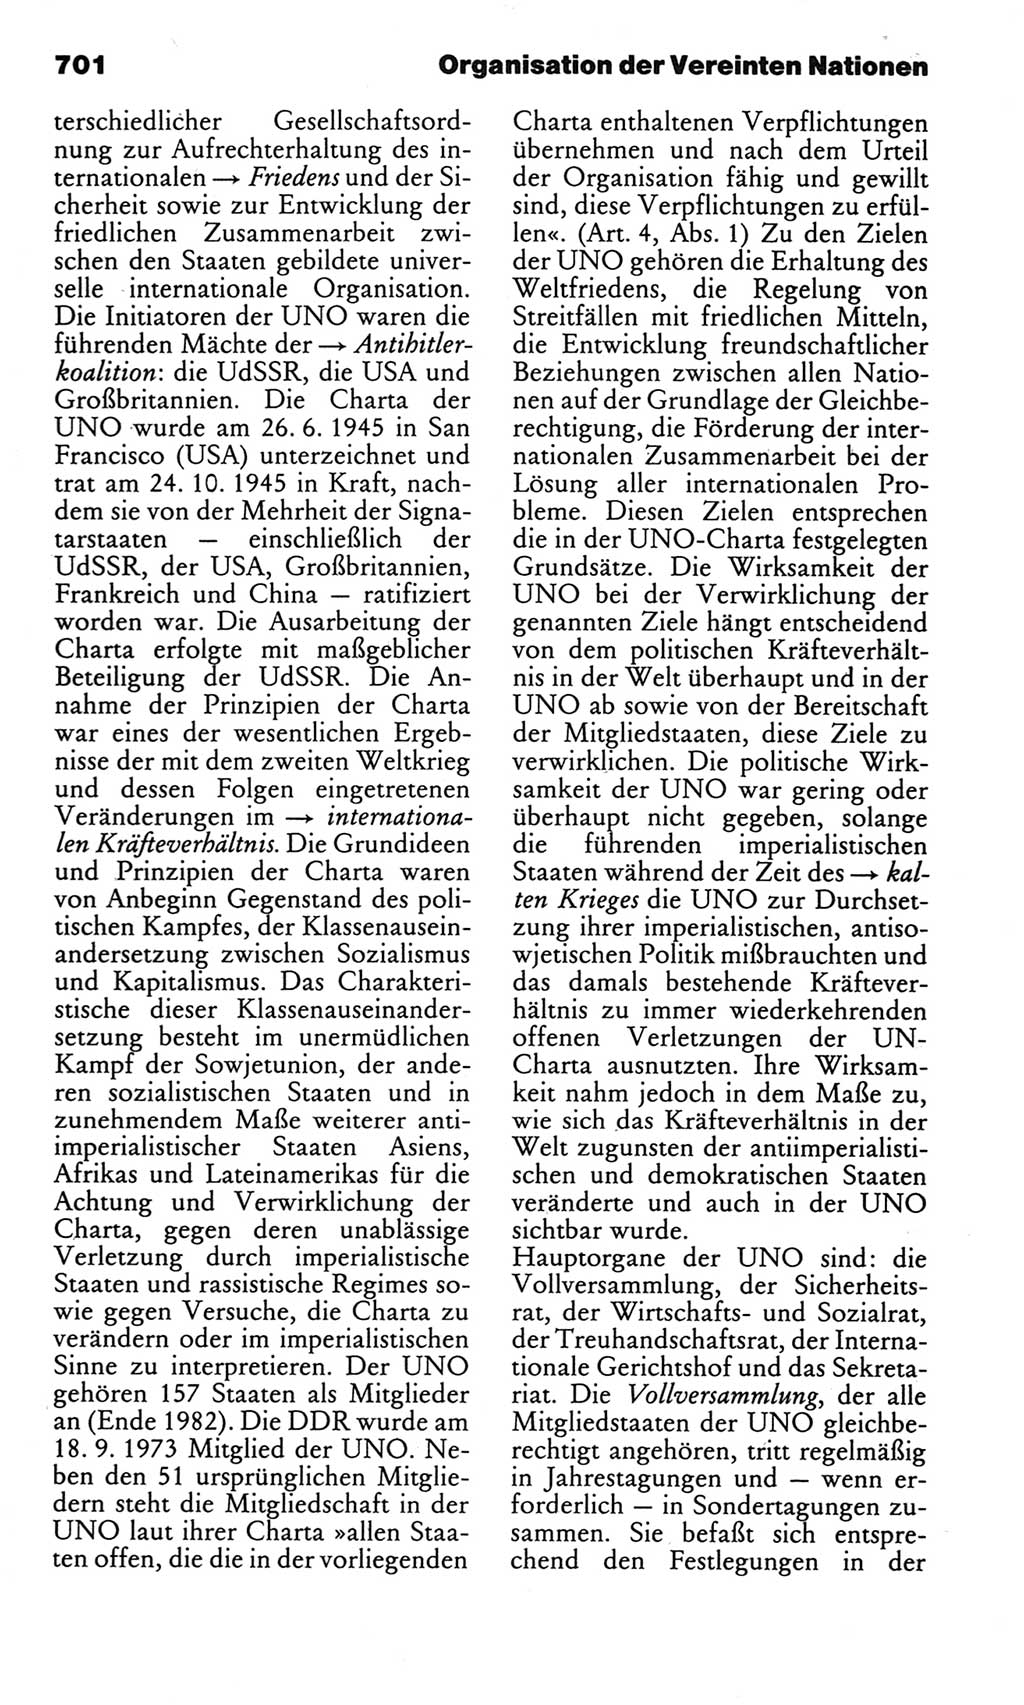 Kleines politisches Wörterbuch [Deutsche Demokratische Republik (DDR)] 1983, Seite 701 (Kl. pol. Wb. DDR 1983, S. 701)